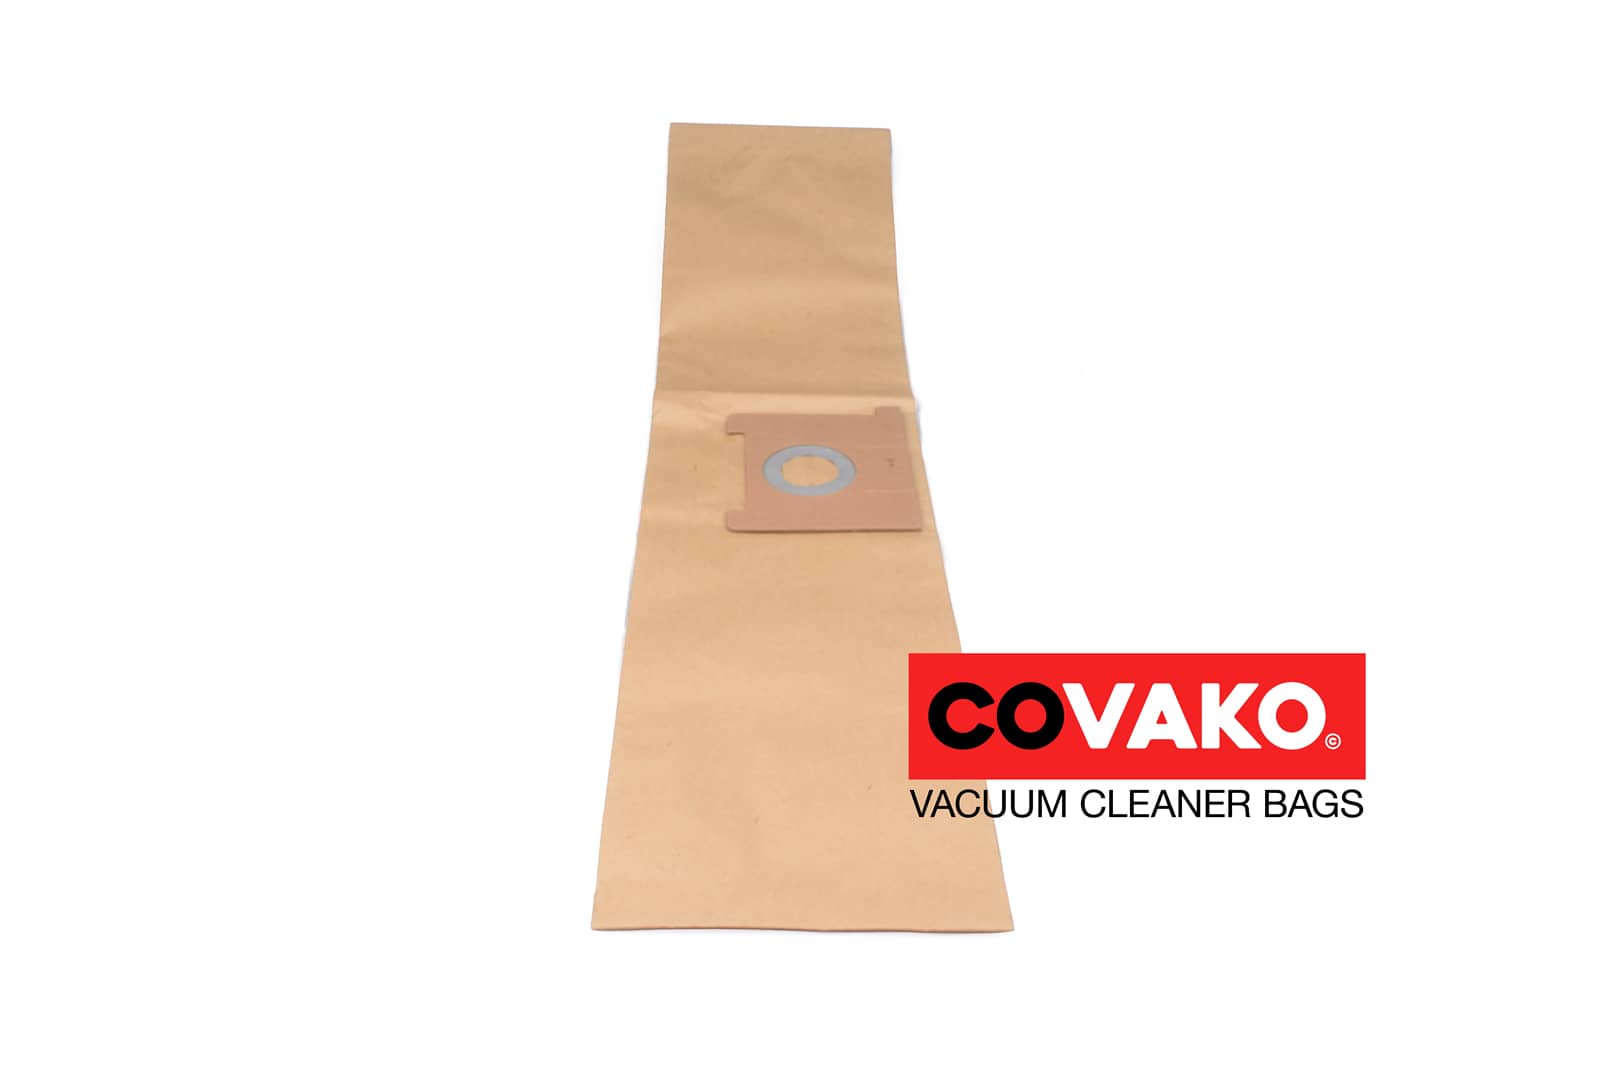 Kenter flexi 9 / Paper - Kenter vacuum cleaner bags